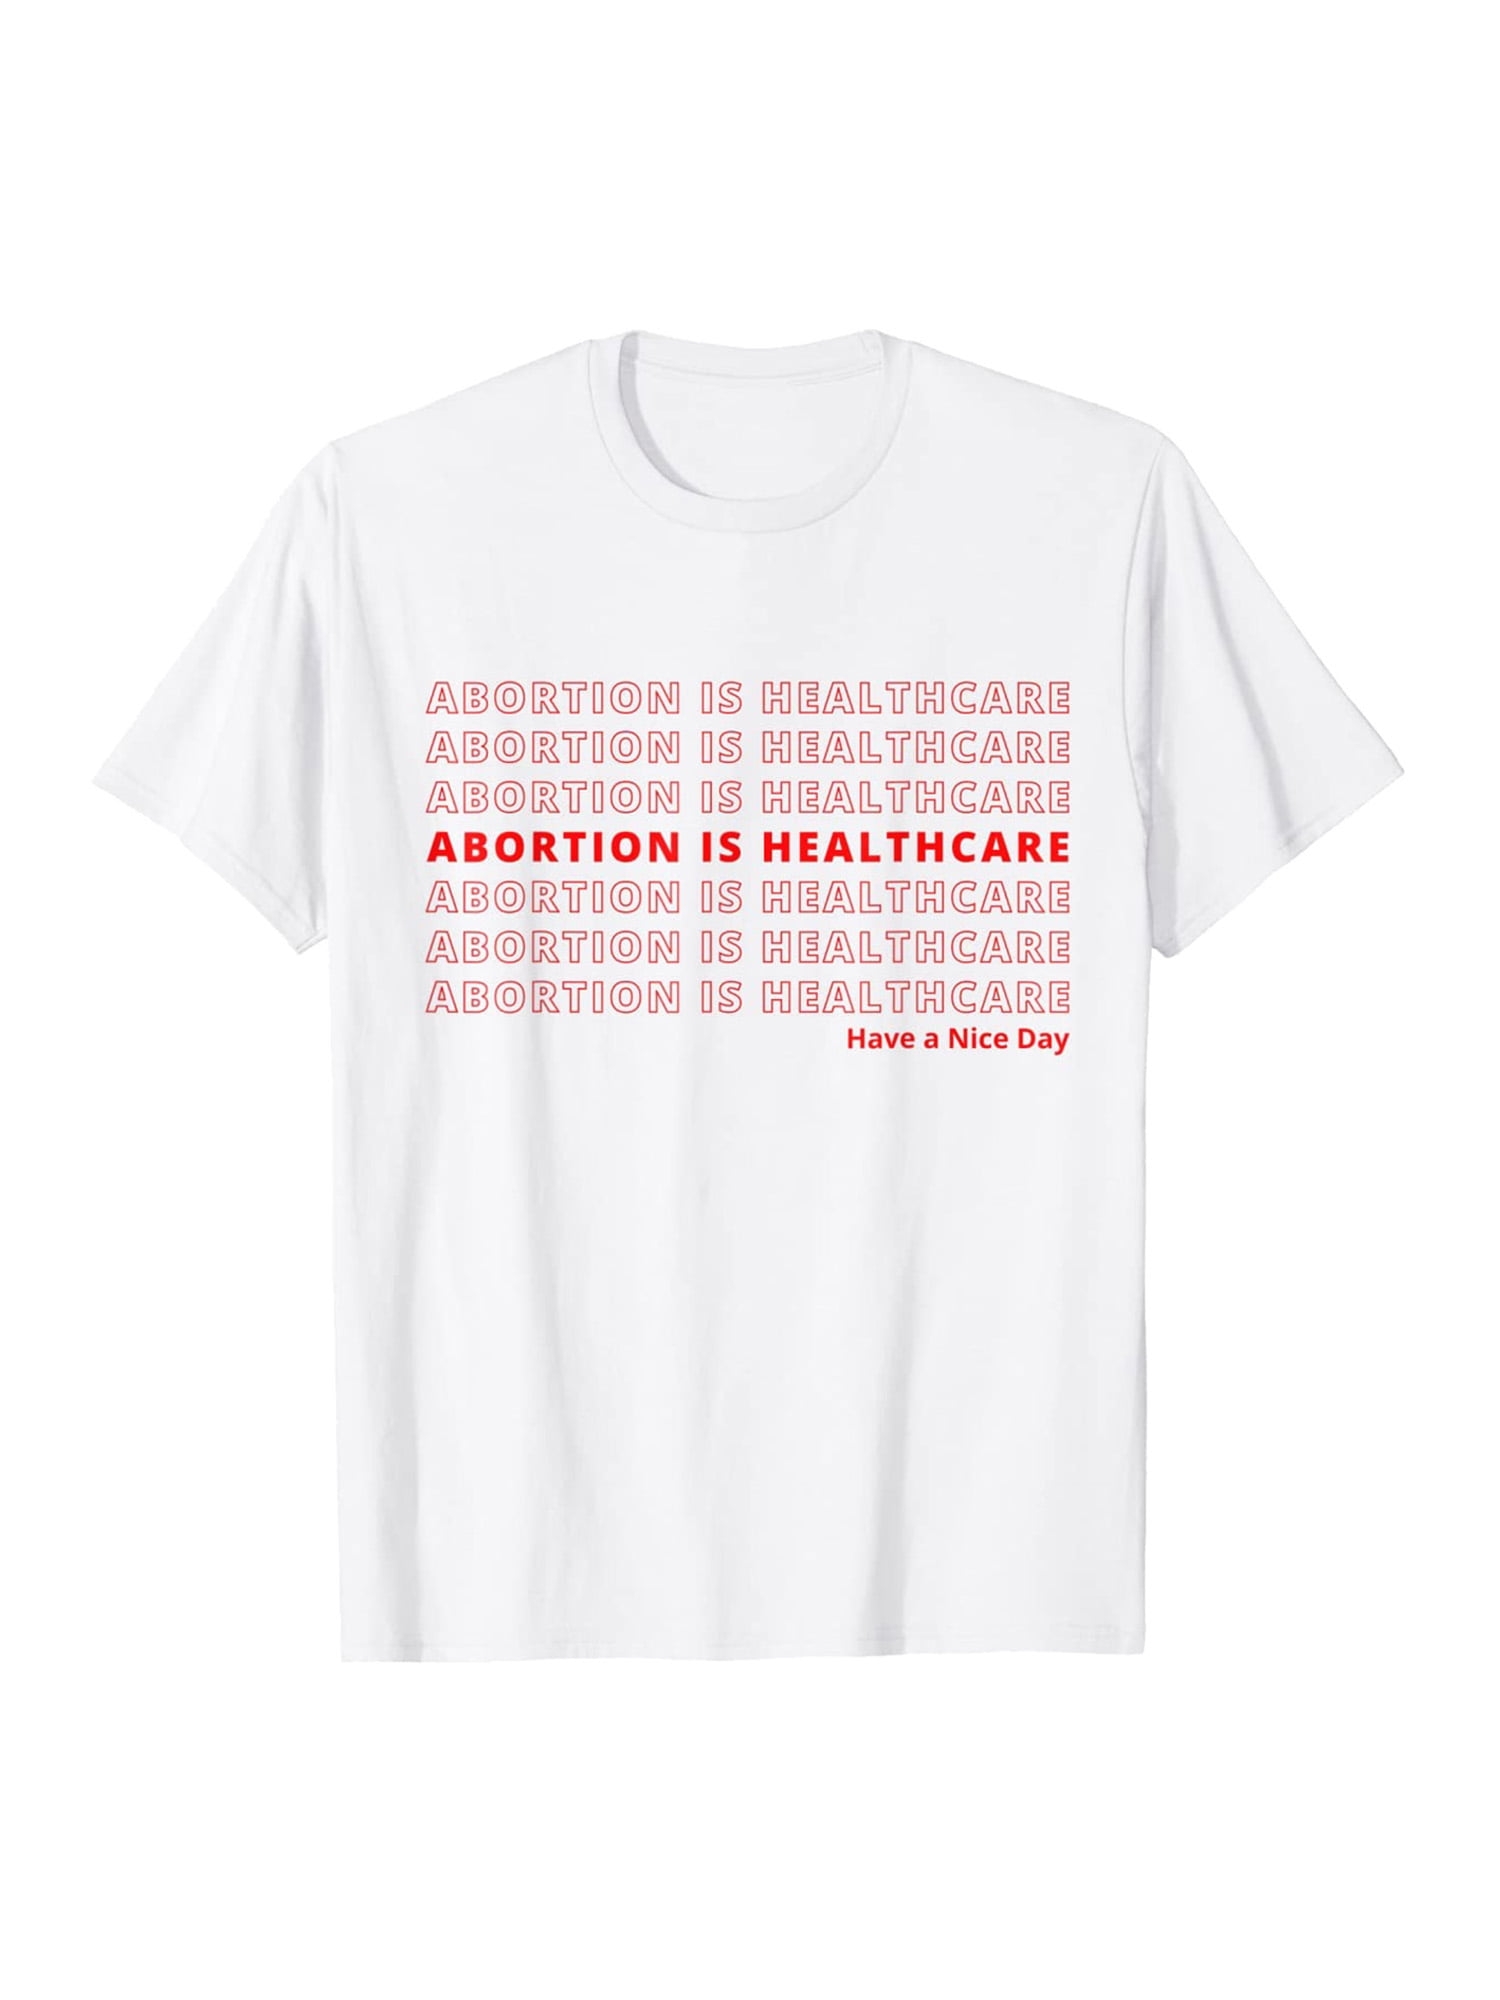 Bleached feminist uterus shirt